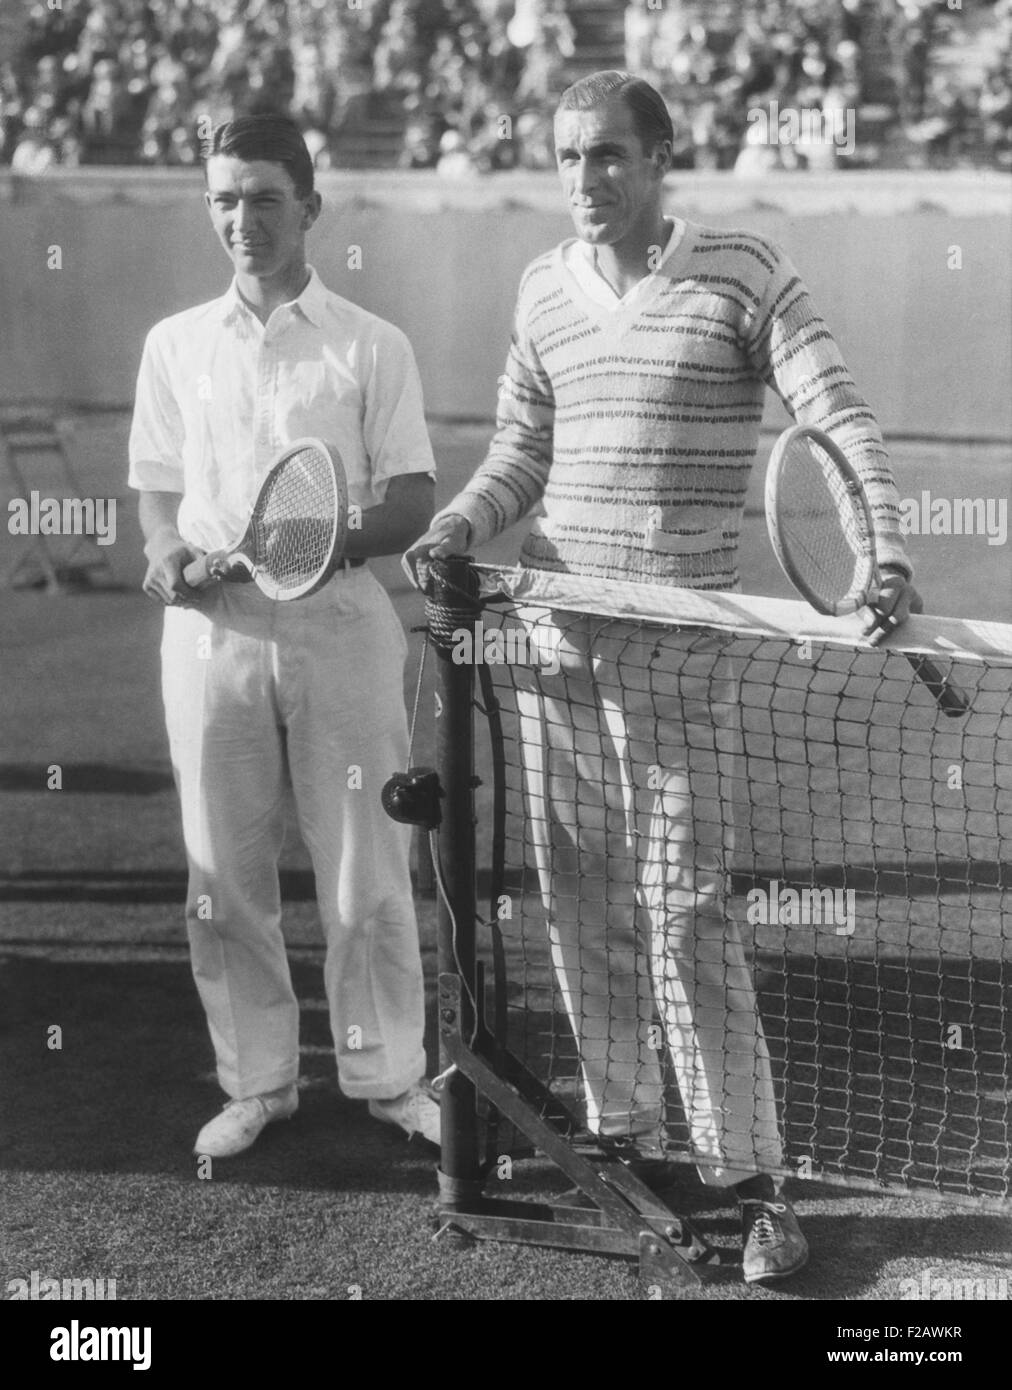 John Van Ryn et Bill Tilden (à gauche) au 45e tournoi national de tennis sur gazon à Forest Hills, New York. 13 septembre, 1926. La championne a remporté Tilden en quatre sets sur Van Ryn, tout en jouant avec un genou blessé. Tilden n'a pas fait dans la finale. CSU (2015   1320 11) Banque D'Images